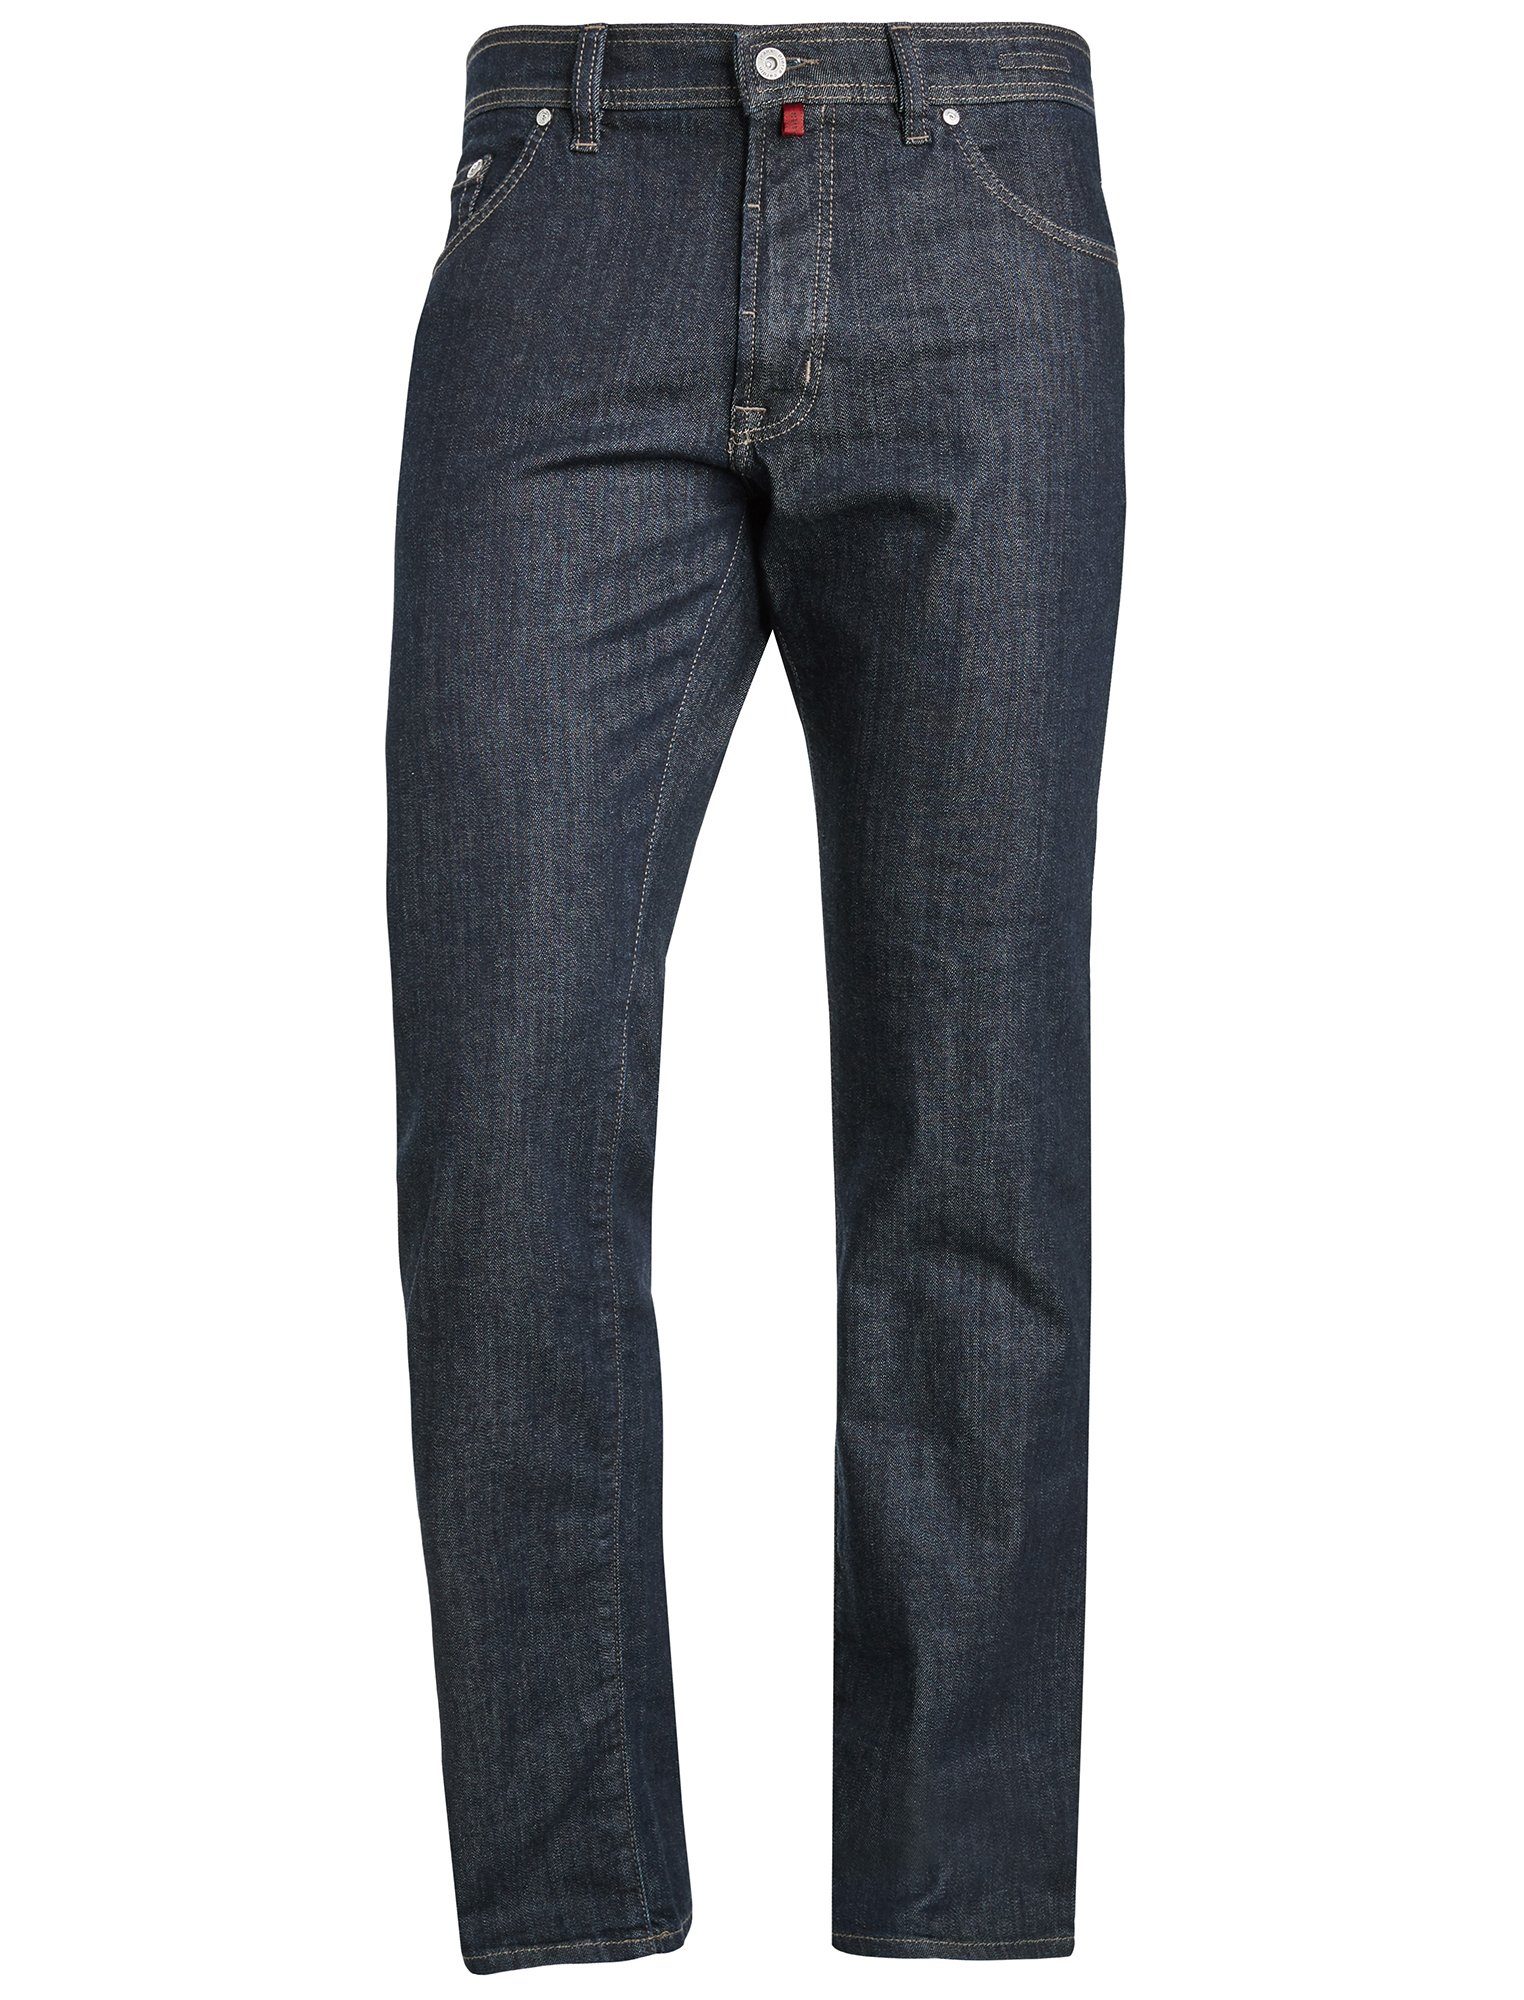 Pierre Cardin 5-Pocket-Jeans »PIERRE CARDIN DEAUVILLE dark indigo rinse  3196« online kaufen | OTTO